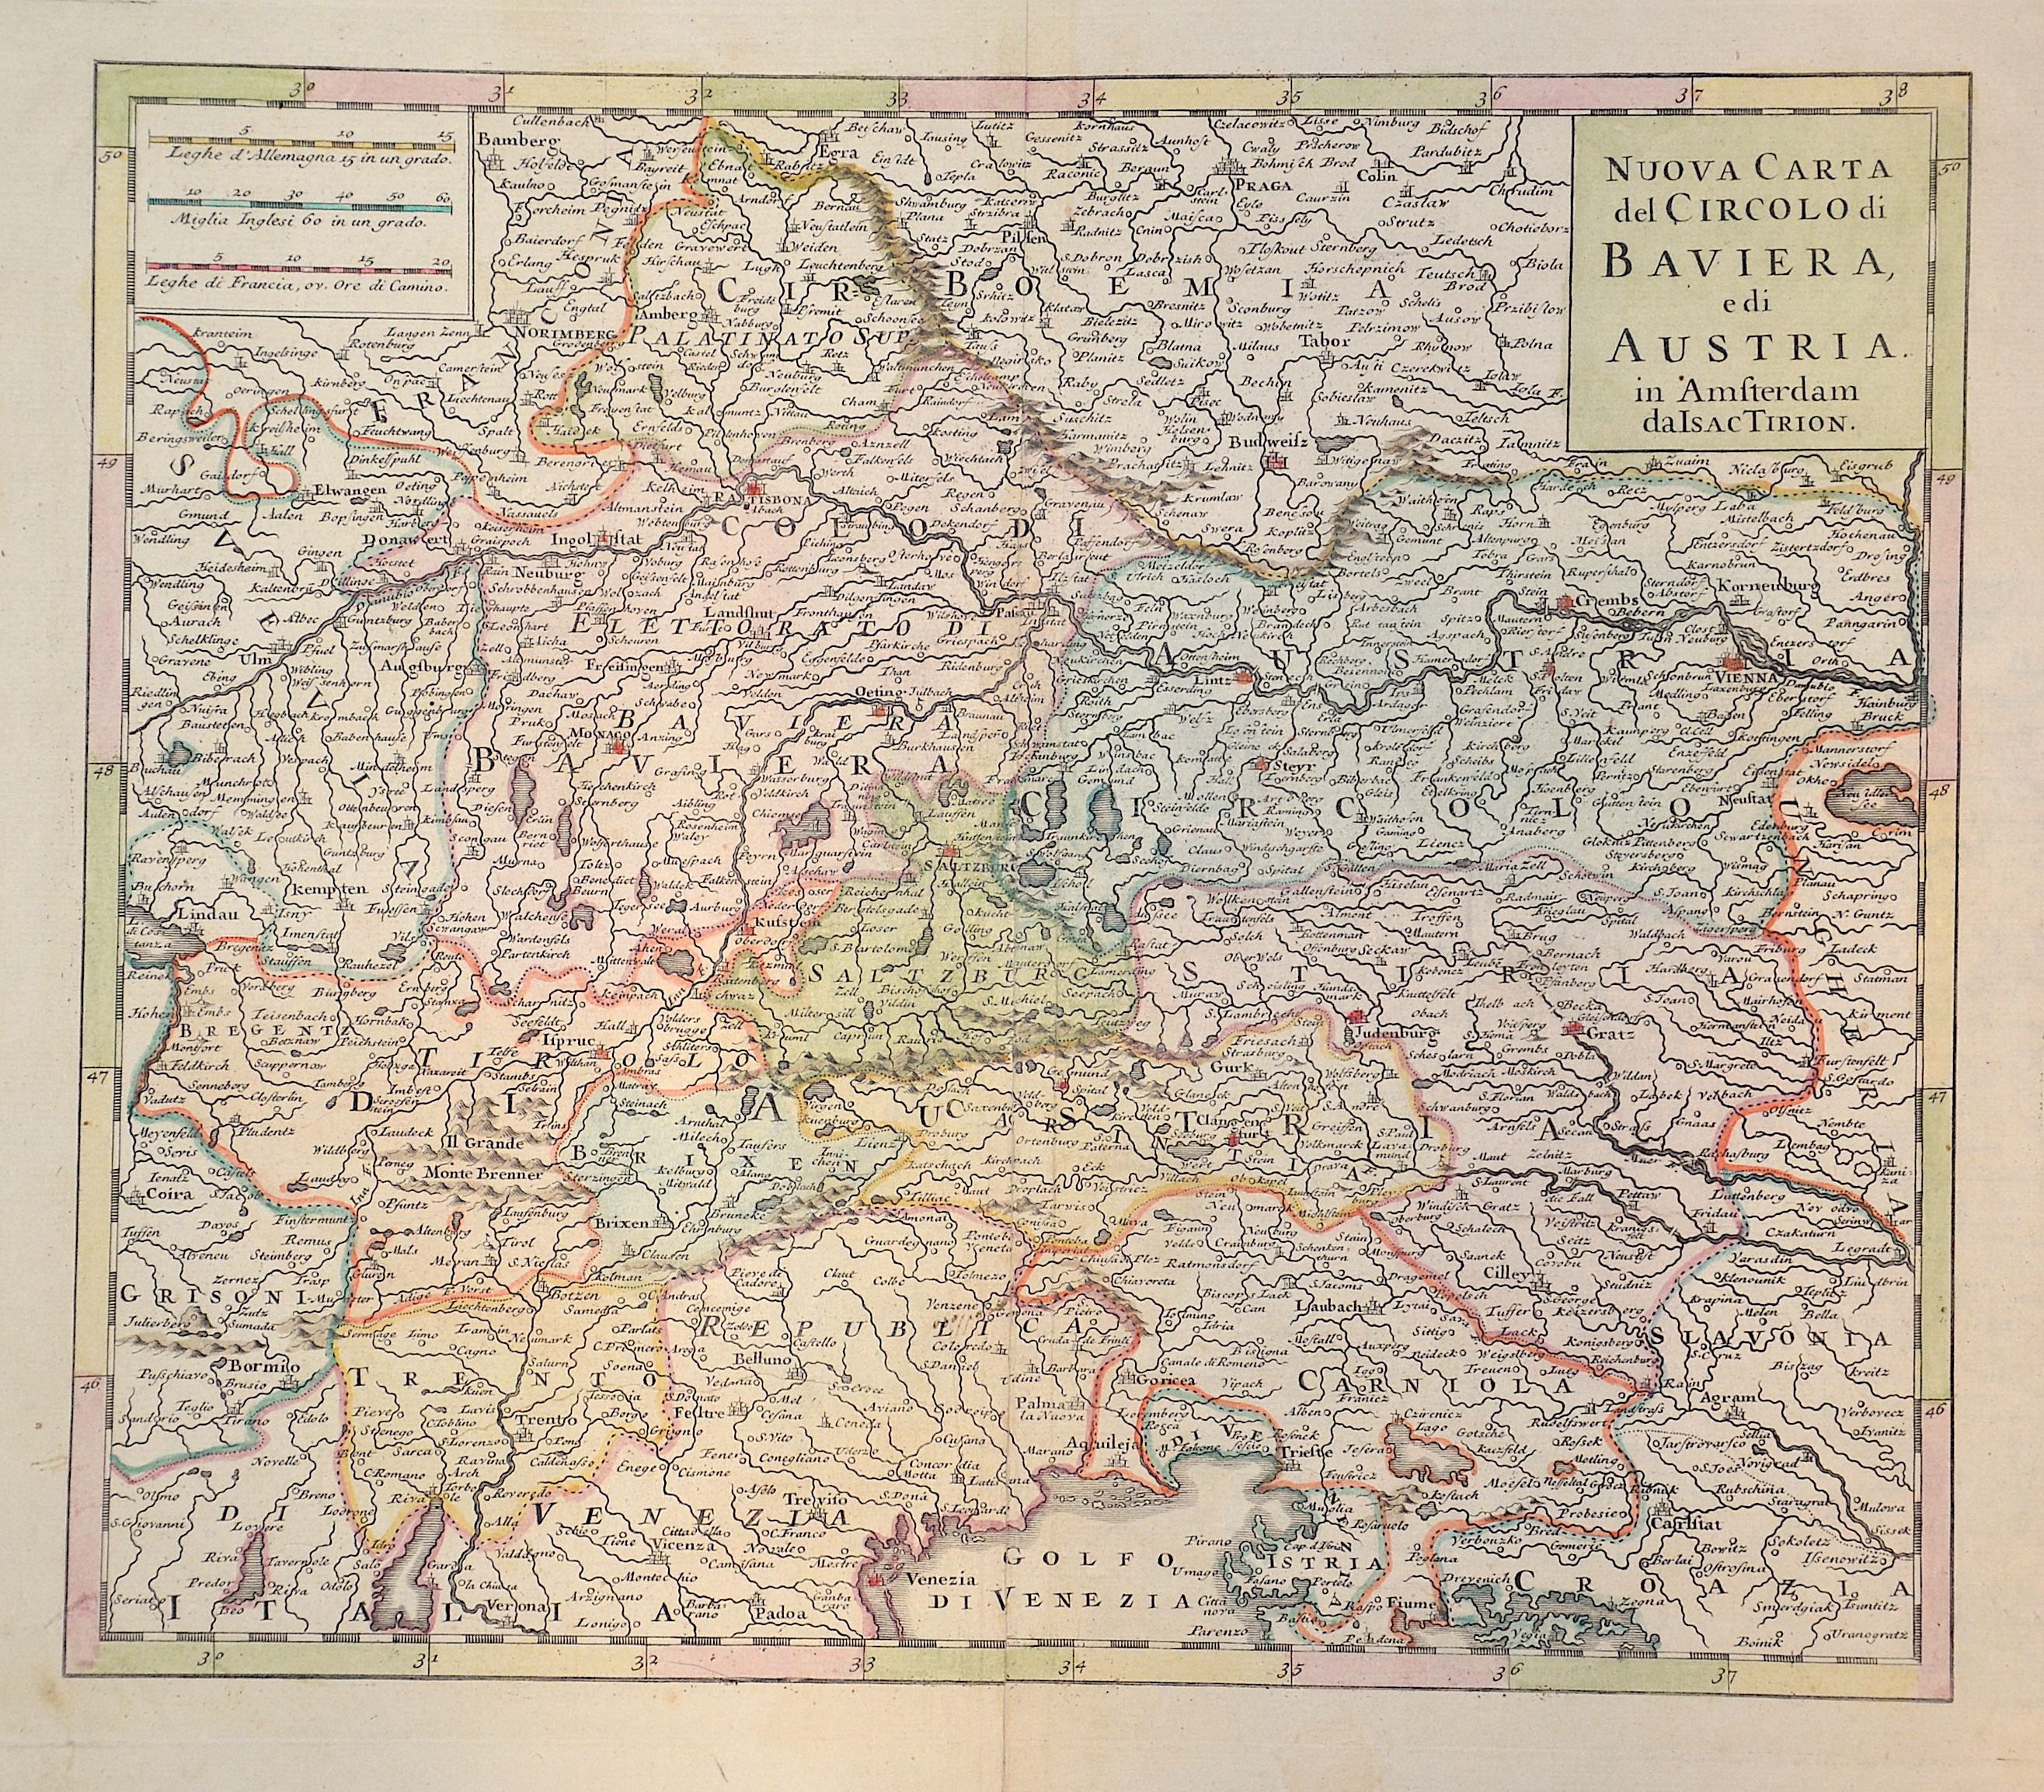 Tirion Isaak Nuova Carte del Circolo di Baviera, edi Austria.